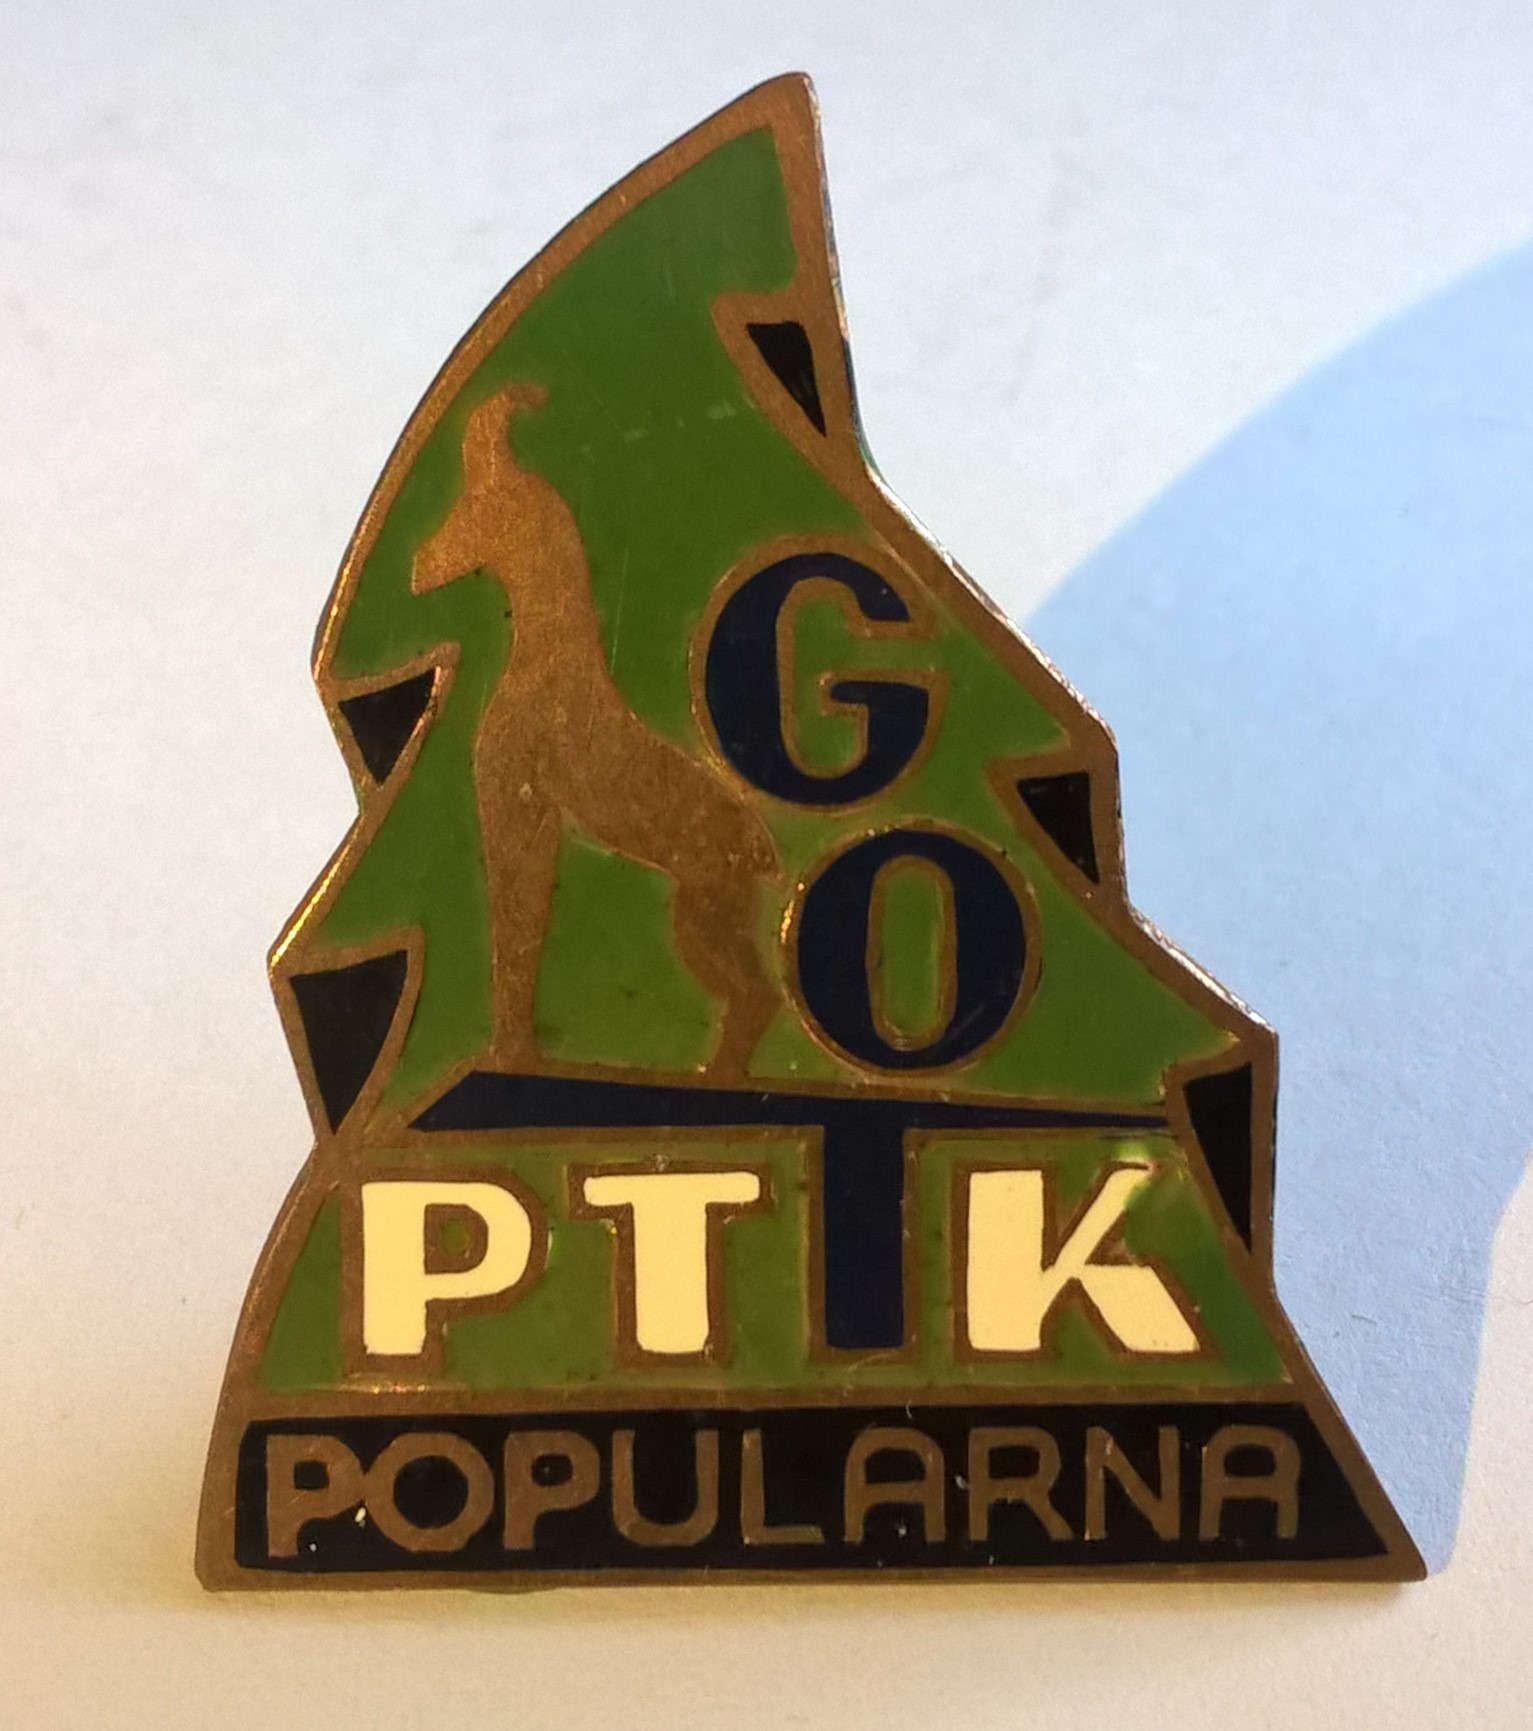 Odznaka GOT PTTK popularna